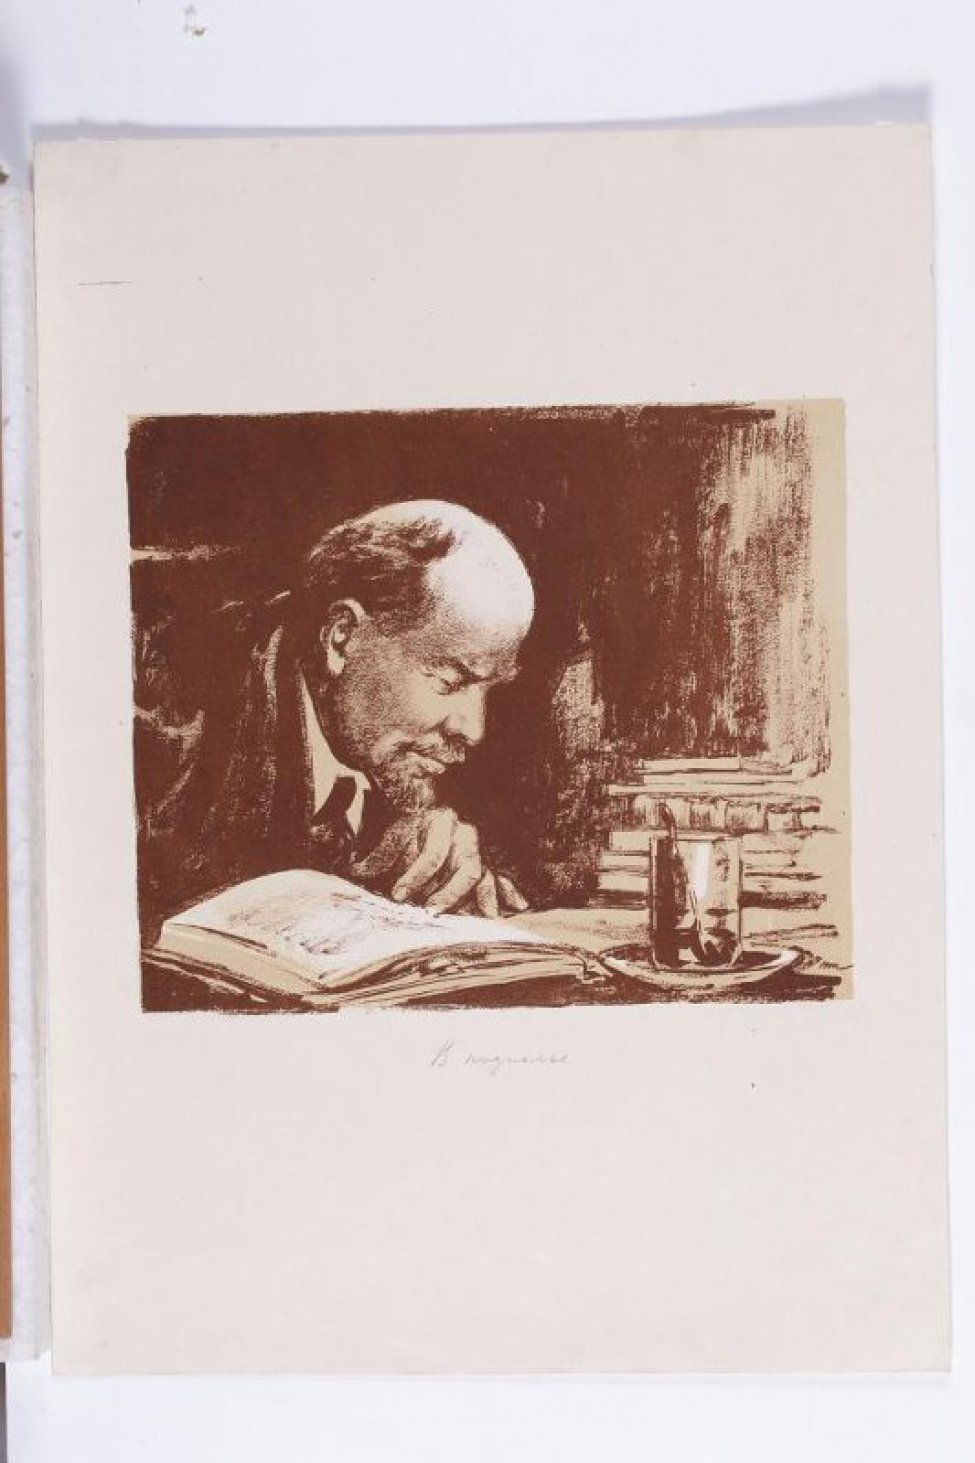 Изображен Ленин за столом, низко склонившийся над книгой, пальцами левой руки он придерживает ее листы. Его фигура, занимающая левую часть литографии, развернута на 3/4 оборота вправо (от зрителя). На столе на блюдце стакан недопитого чаю и стопка книг.